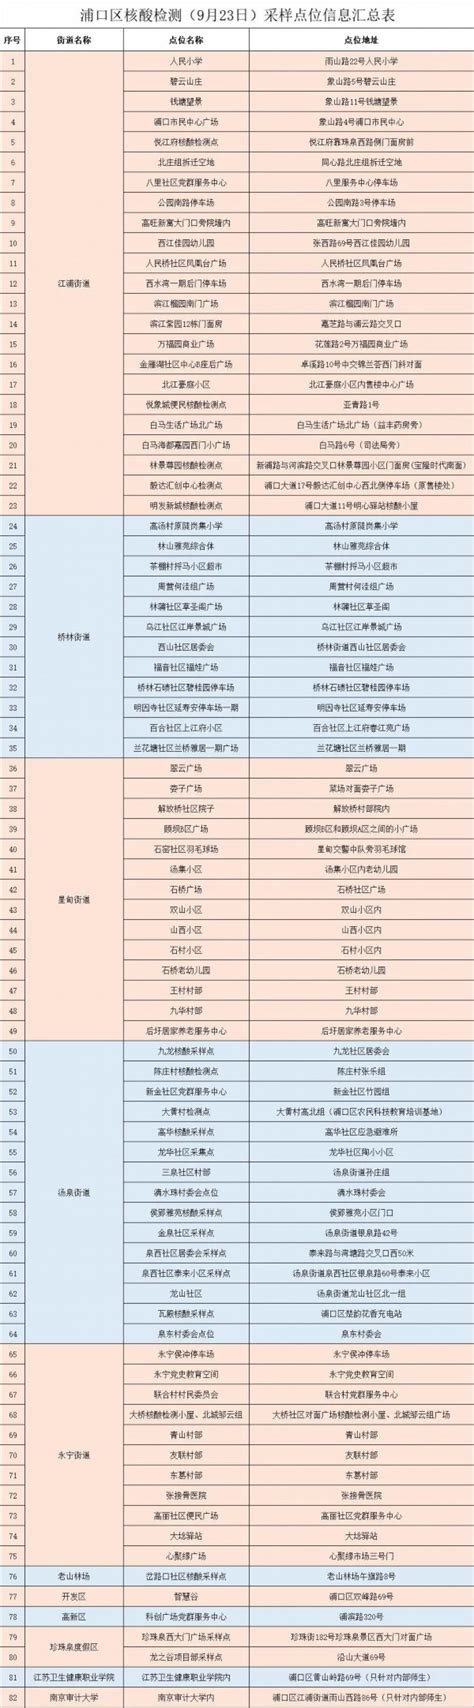 南京浦口区关于9月23日开展核酸检测的通告_荔枝网新闻